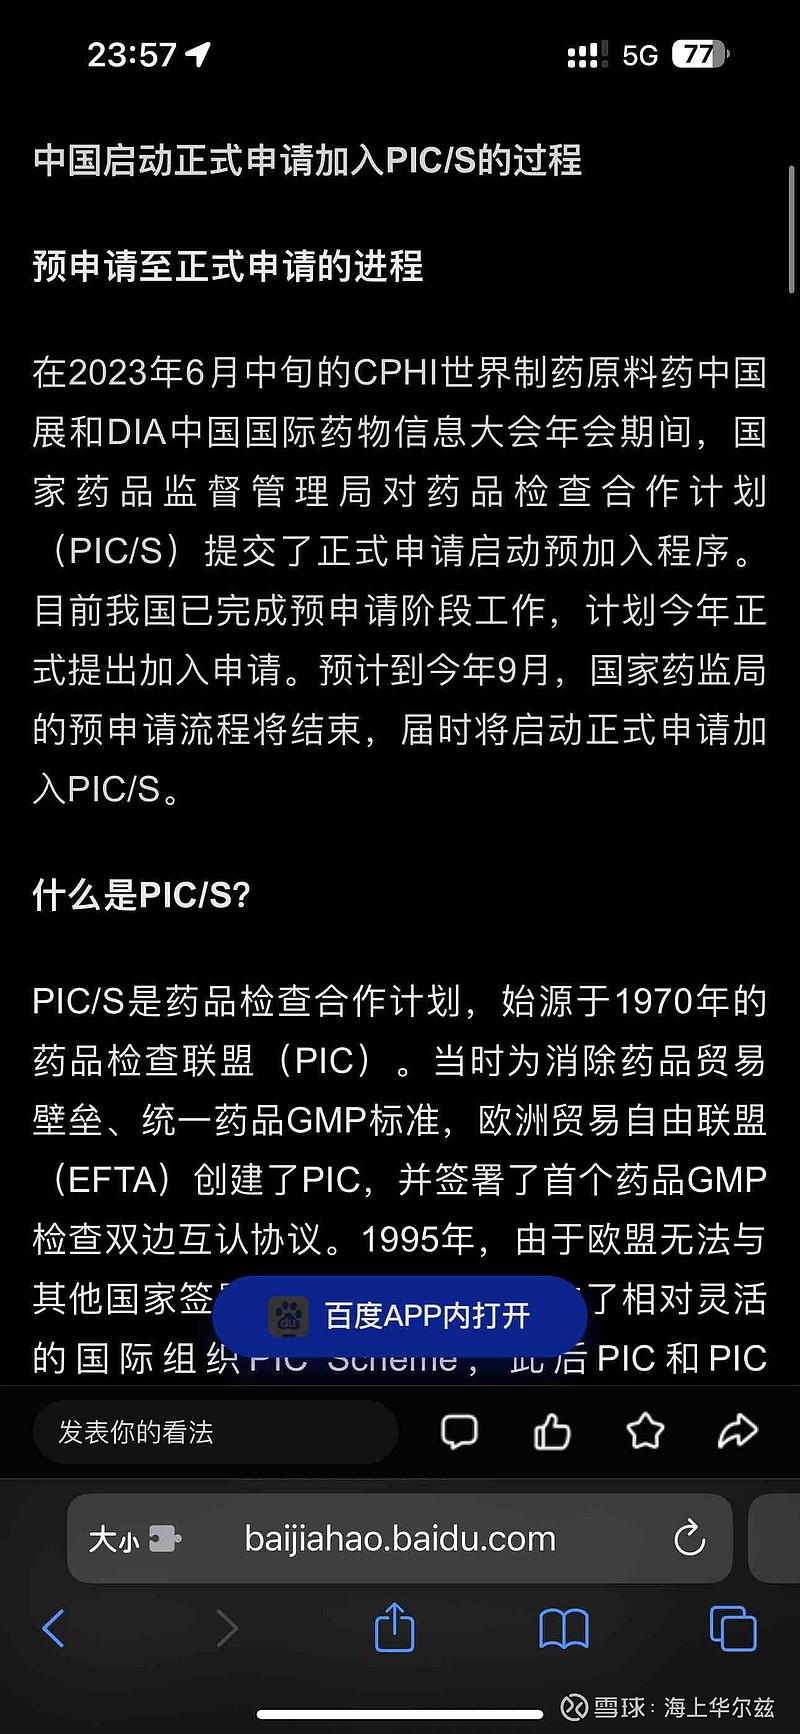 中国今年加入PIC/s的预期还